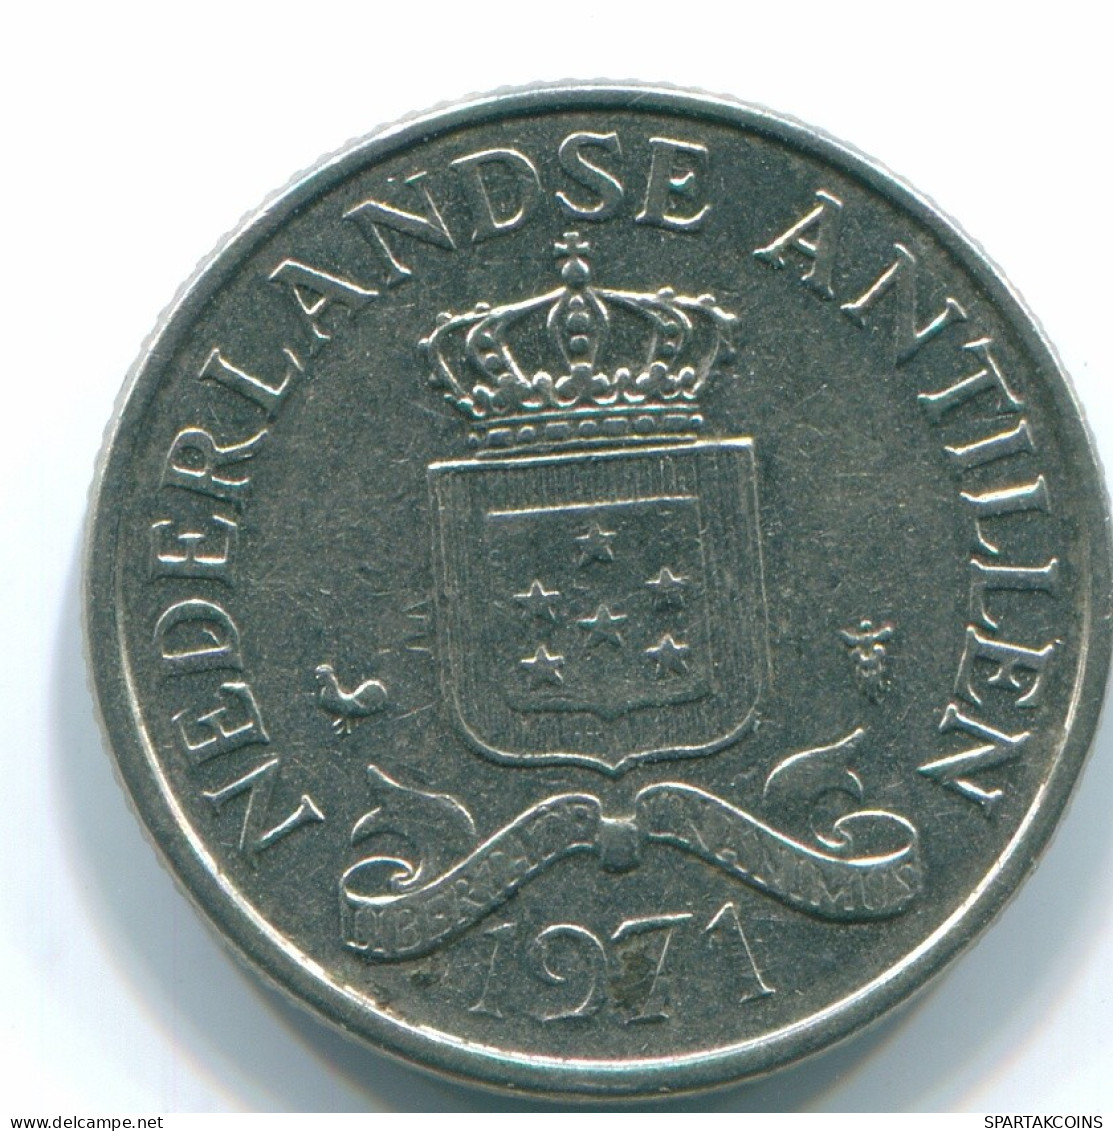 25 CENTS 1971 NETHERLANDS ANTILLES Nickel Colonial Coin #S11536.U.A - Niederländische Antillen